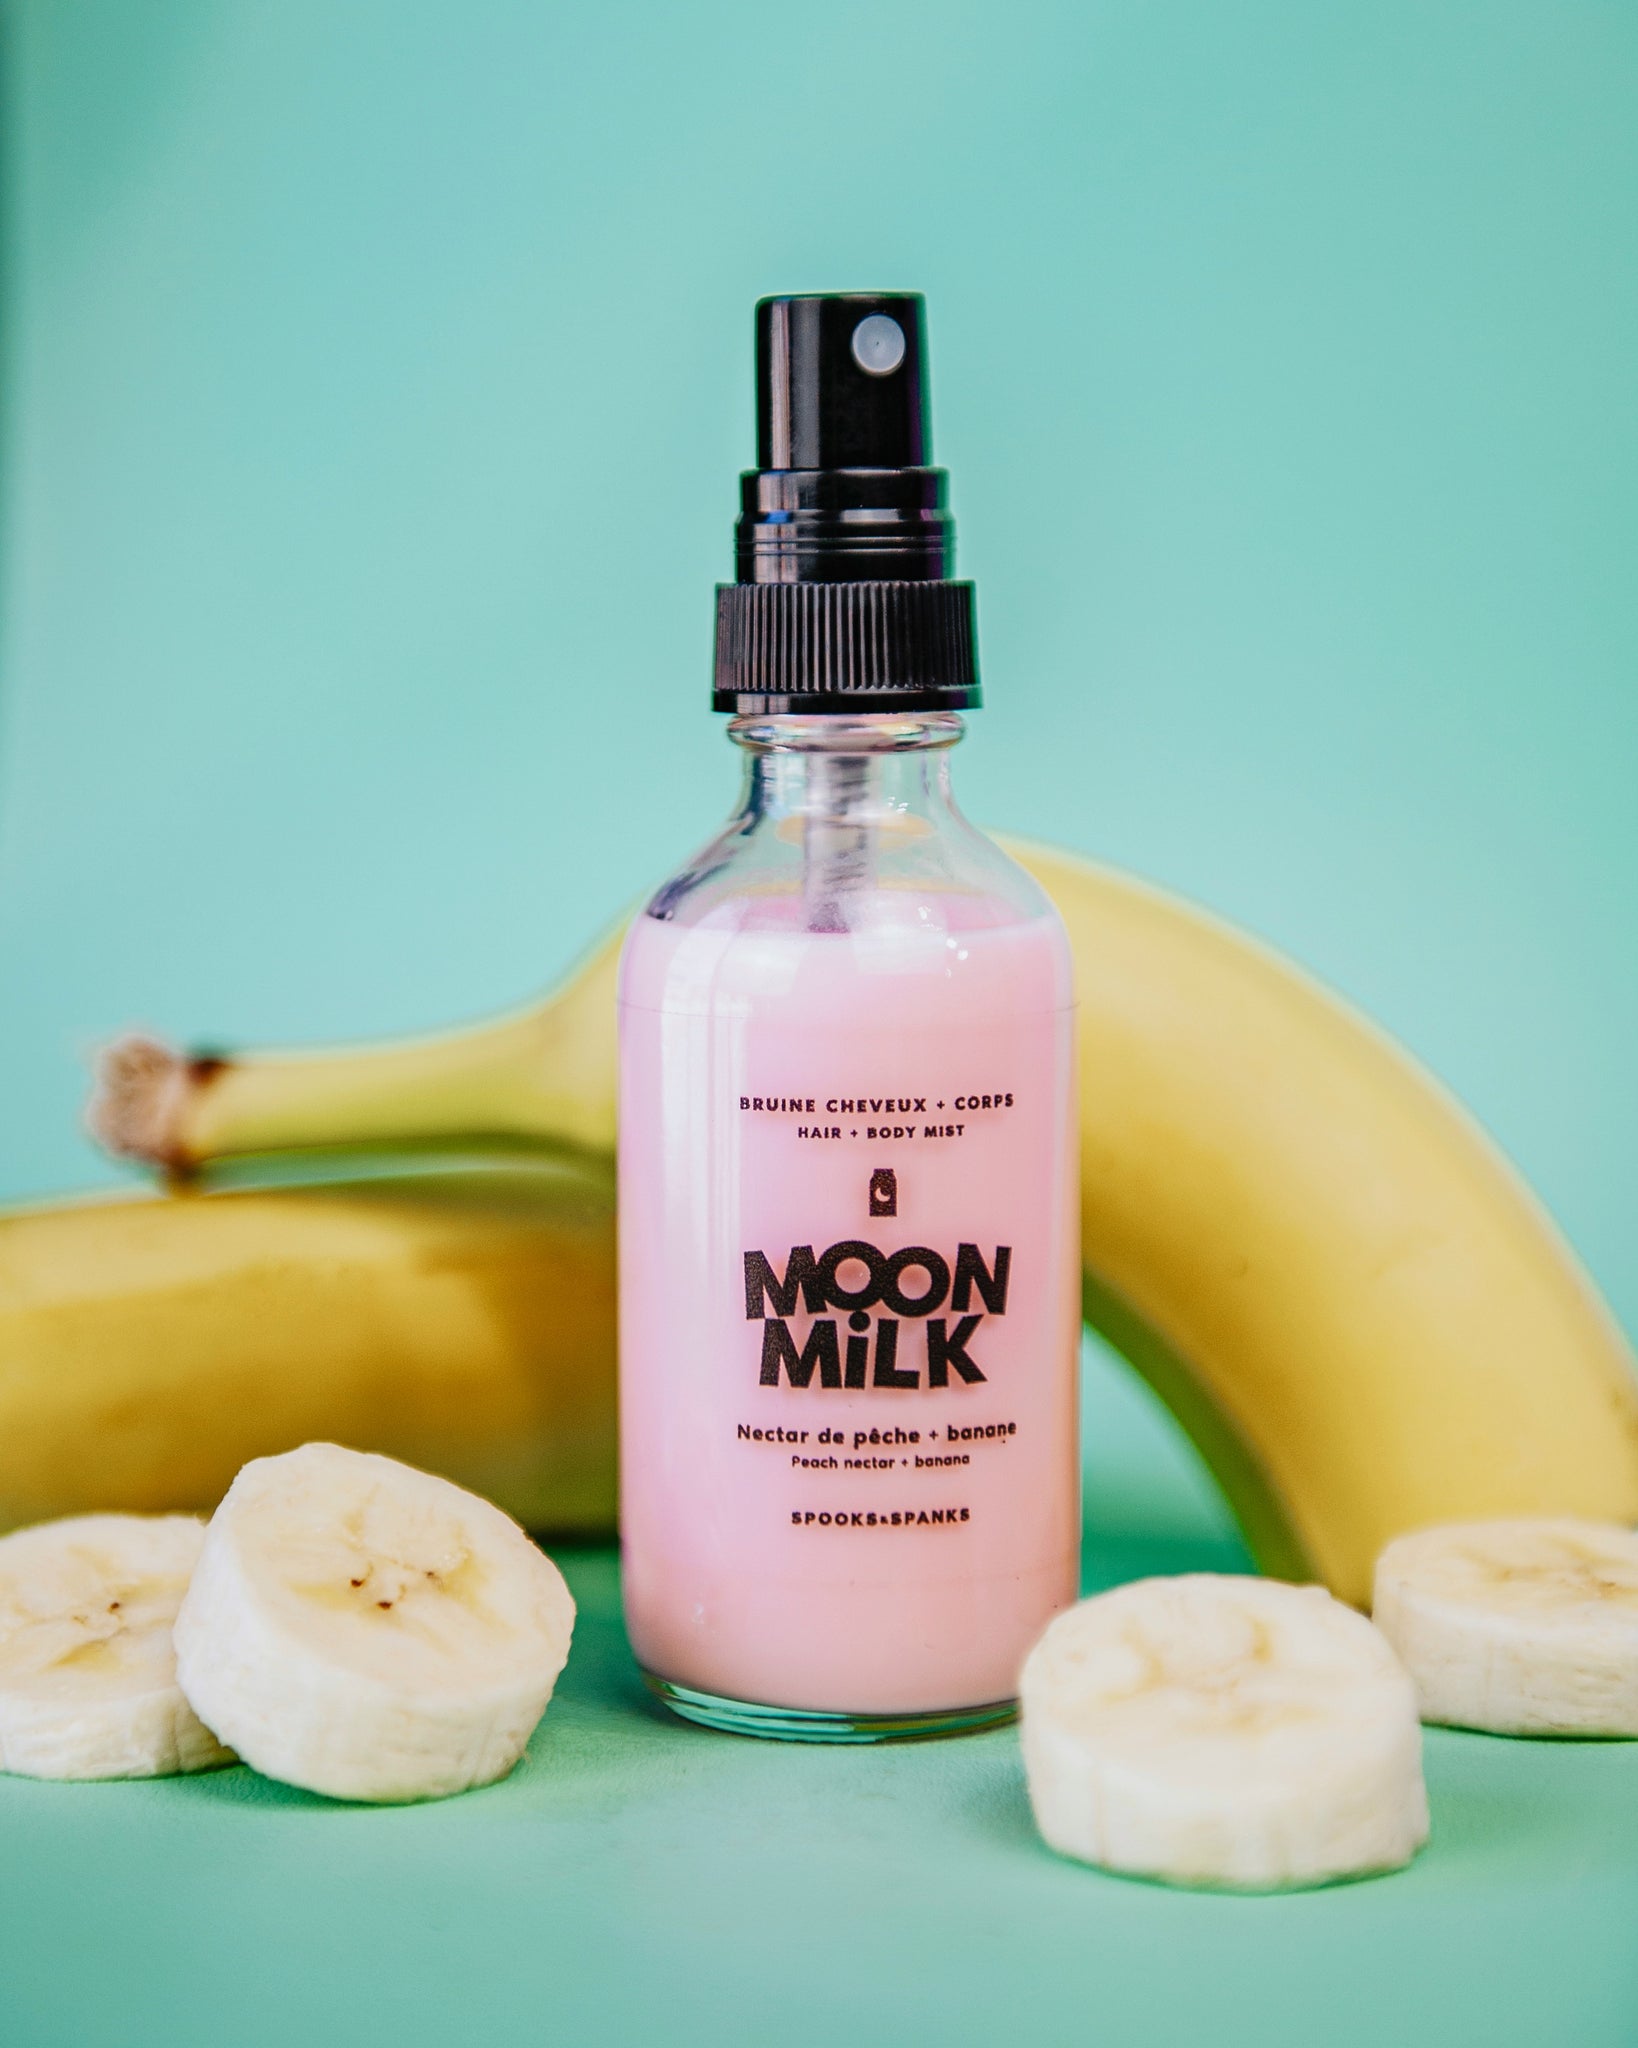 Moon Milk peach nectar + banana Body and Hair Mist